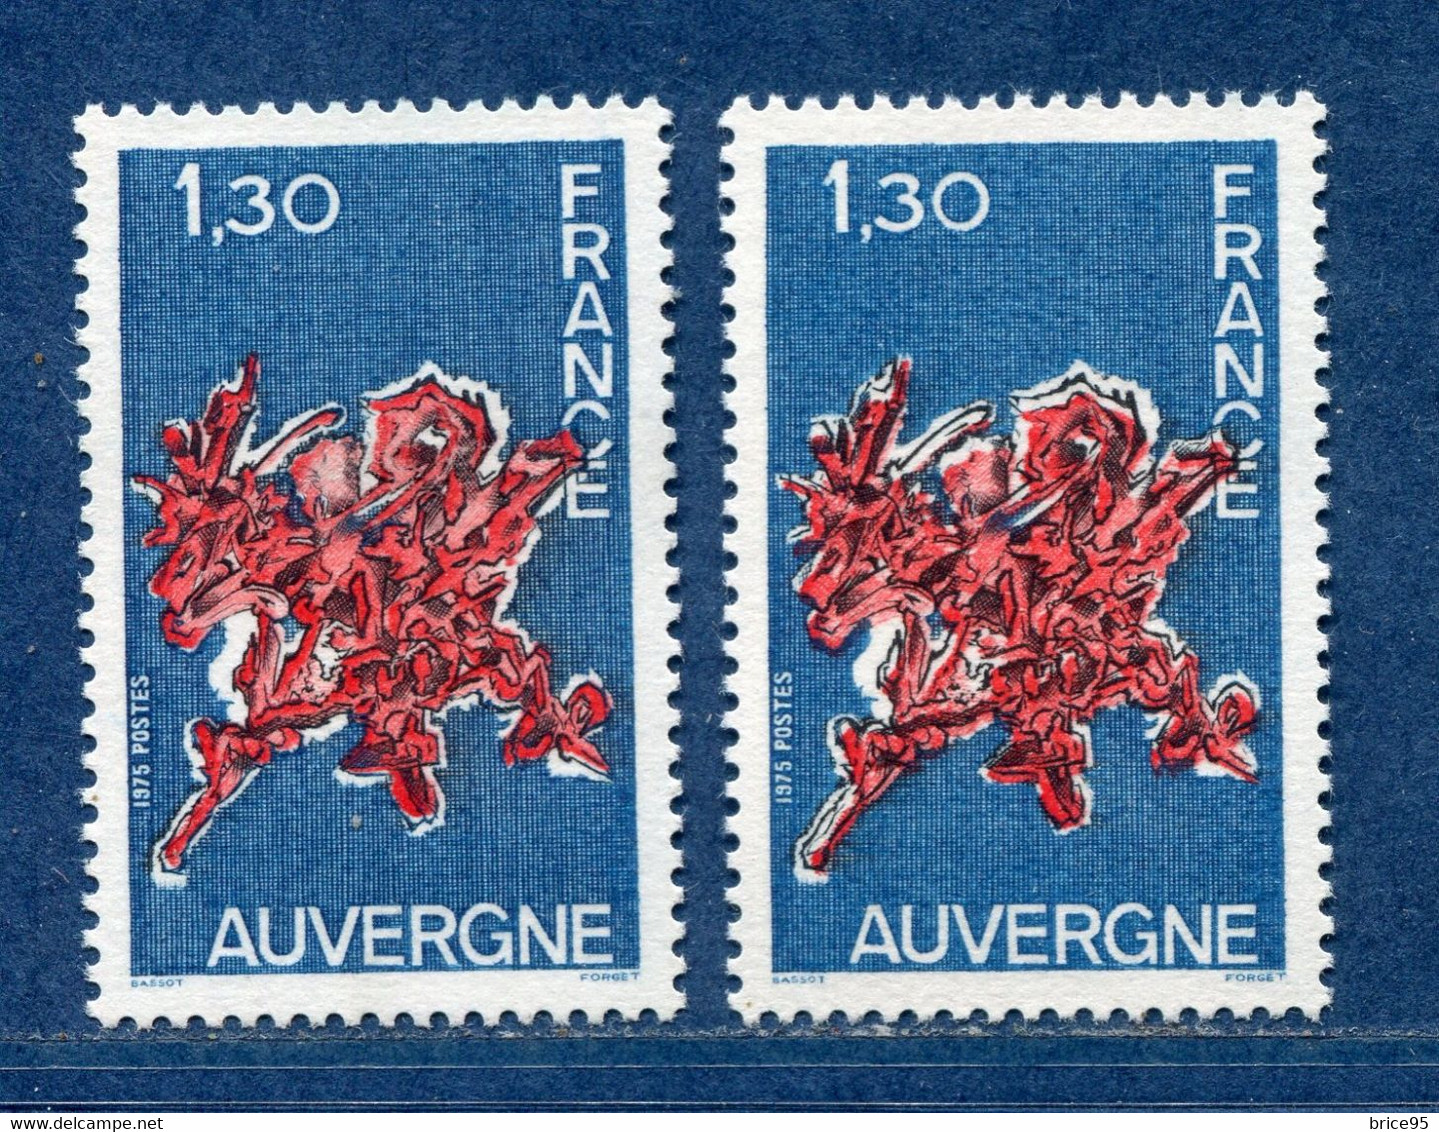 ⭐ France - Variété - YT N° 1850 - Couleurs - Pétouille - Neuf Sans Charnière - 1975 ⭐ - Unused Stamps